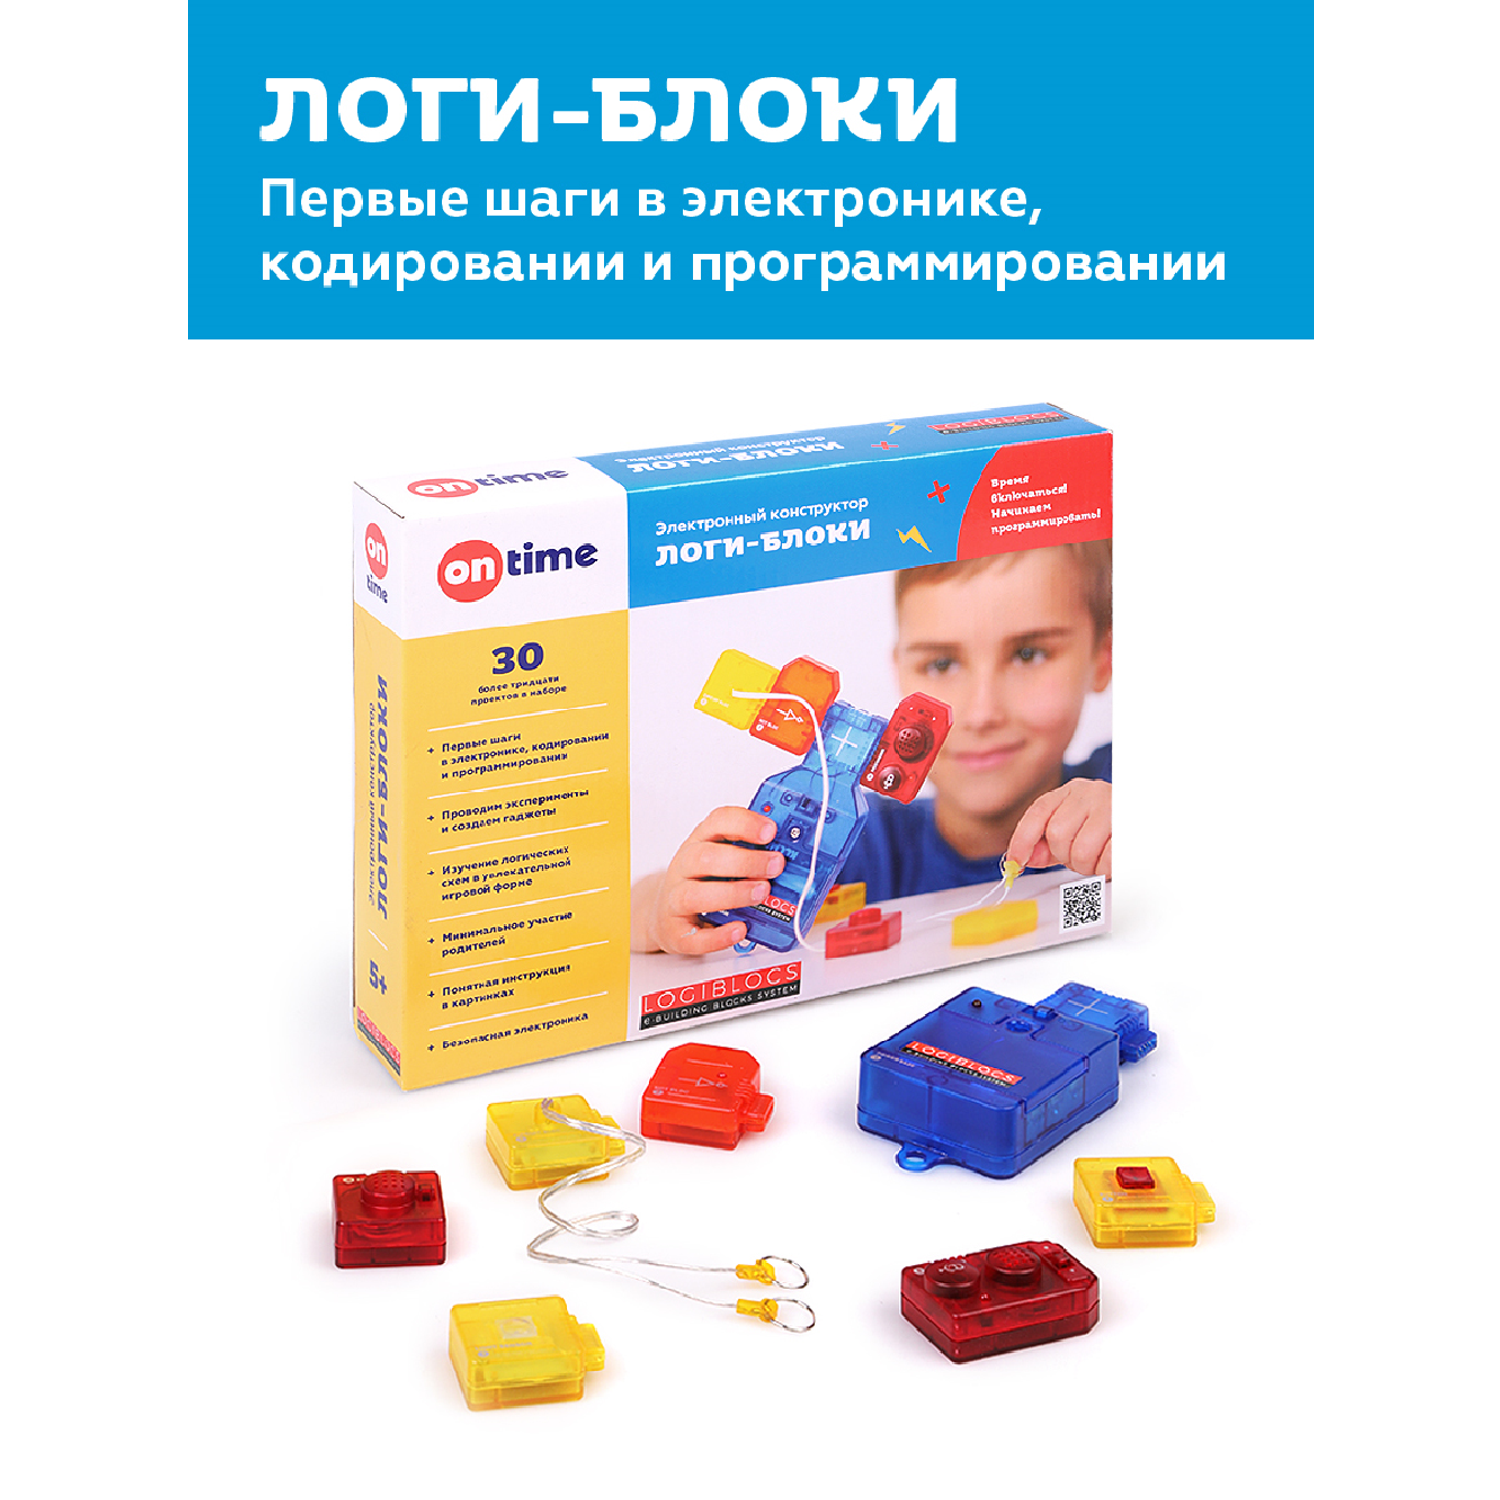 Игрушки, товары для детей оптом, Владивосток --> Конструкторы электронные